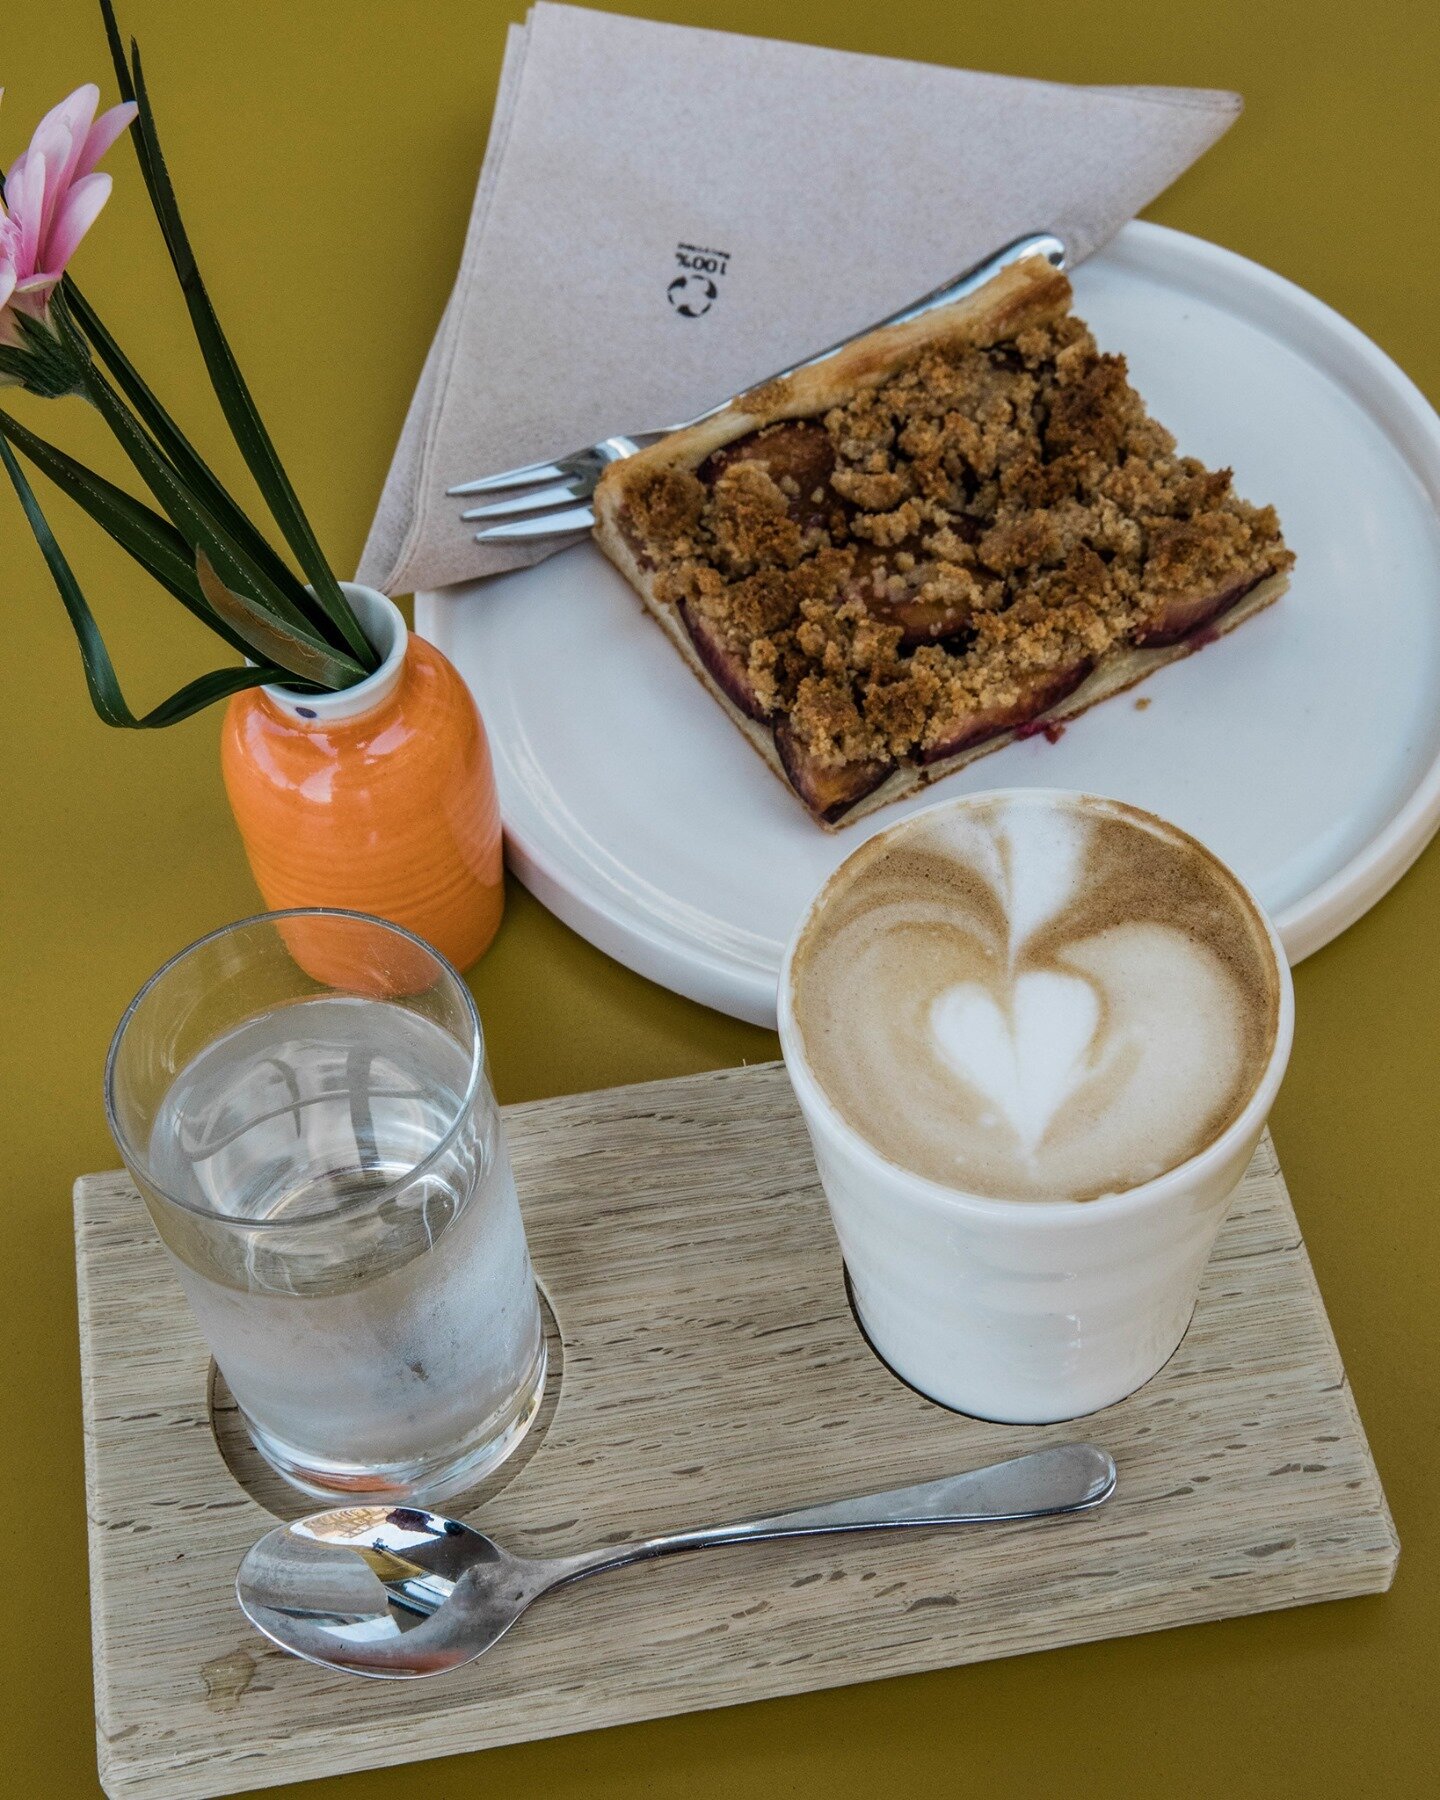 Unser Kaffeehaus ist ein guter Ort, um sich aufs Wochenende einzustimmen: Bei einer Tasse Bio Kaffee von unserem R&ouml;ster @suchan_kaffee und einem Bio Zwetschkenplunder ist der Stress gleich vergessen. ☕#graggerchorherr #suchankaffee #reininswoche